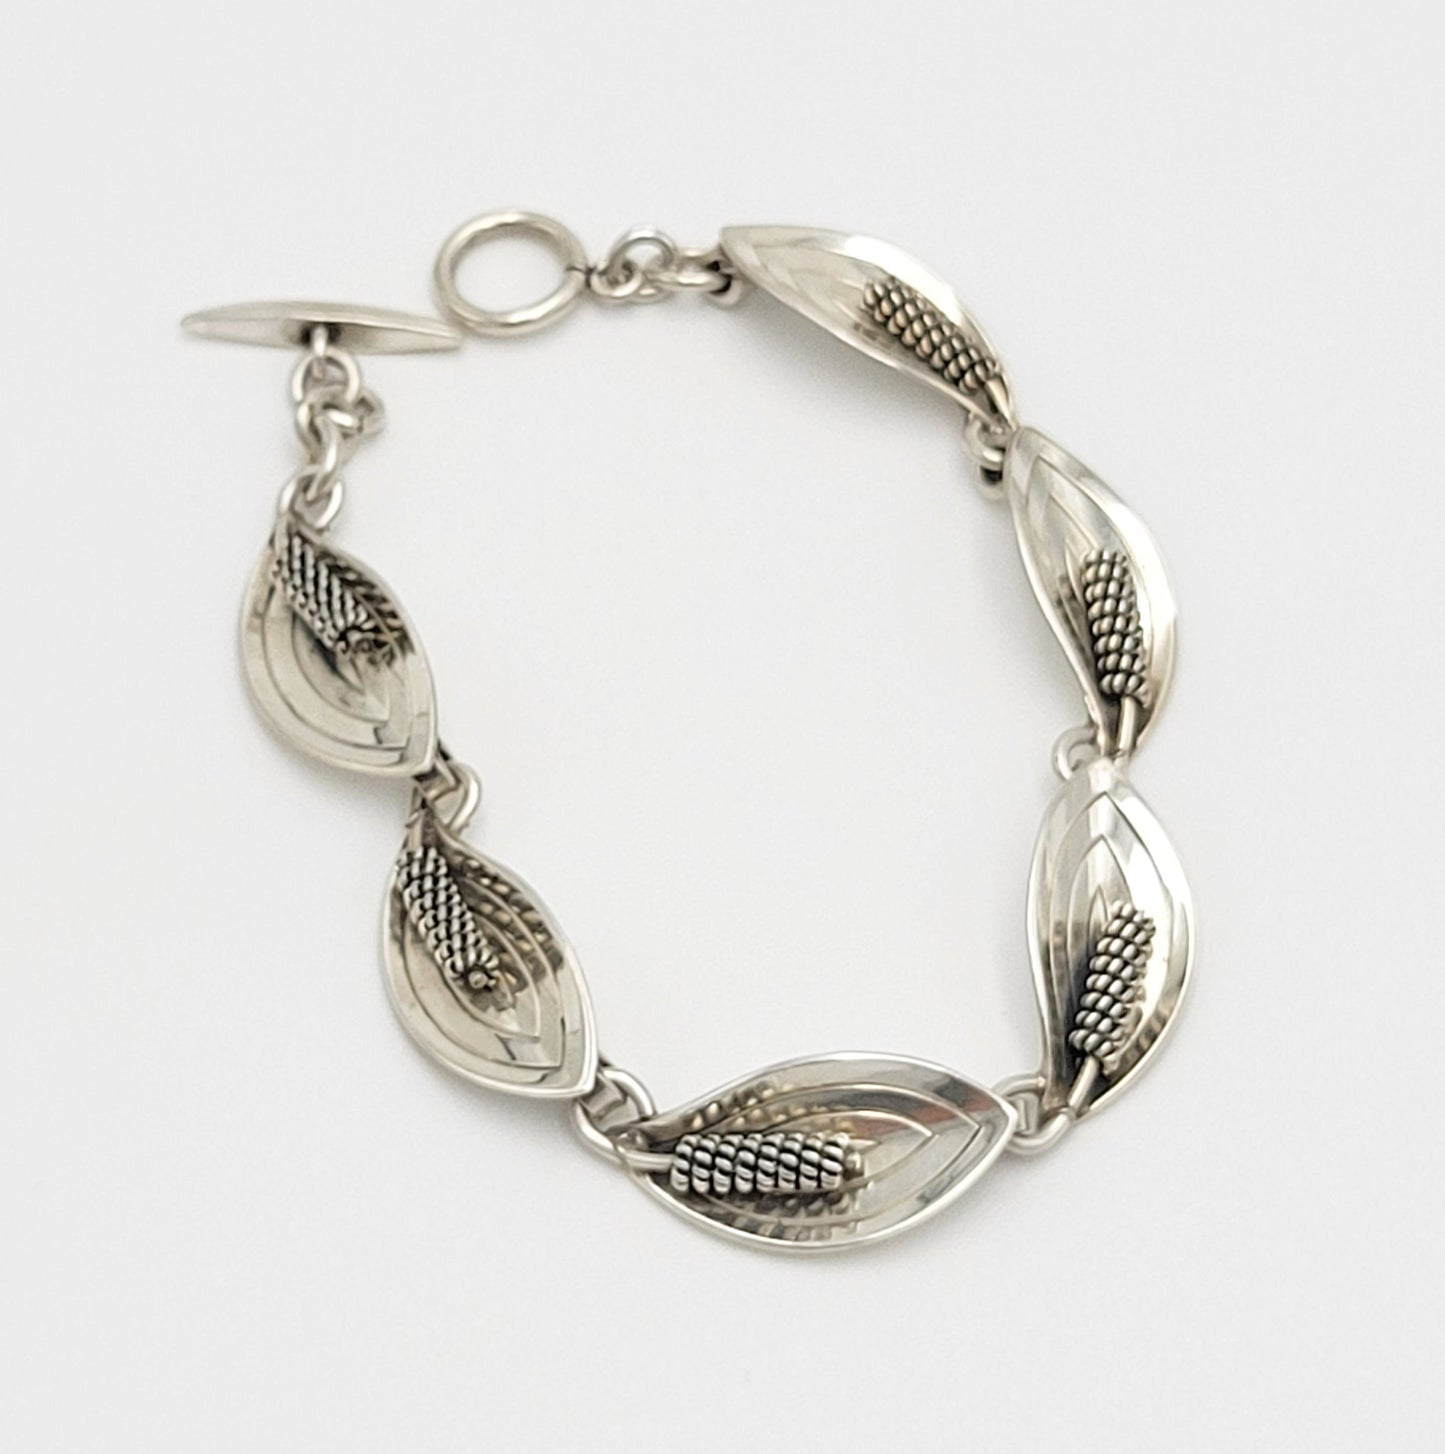 A & K Denmark Jewelry Modernist Sterling 3-D Calle Lily Flower Links Bracelet by Aarre & Krogh Denmark 1960s